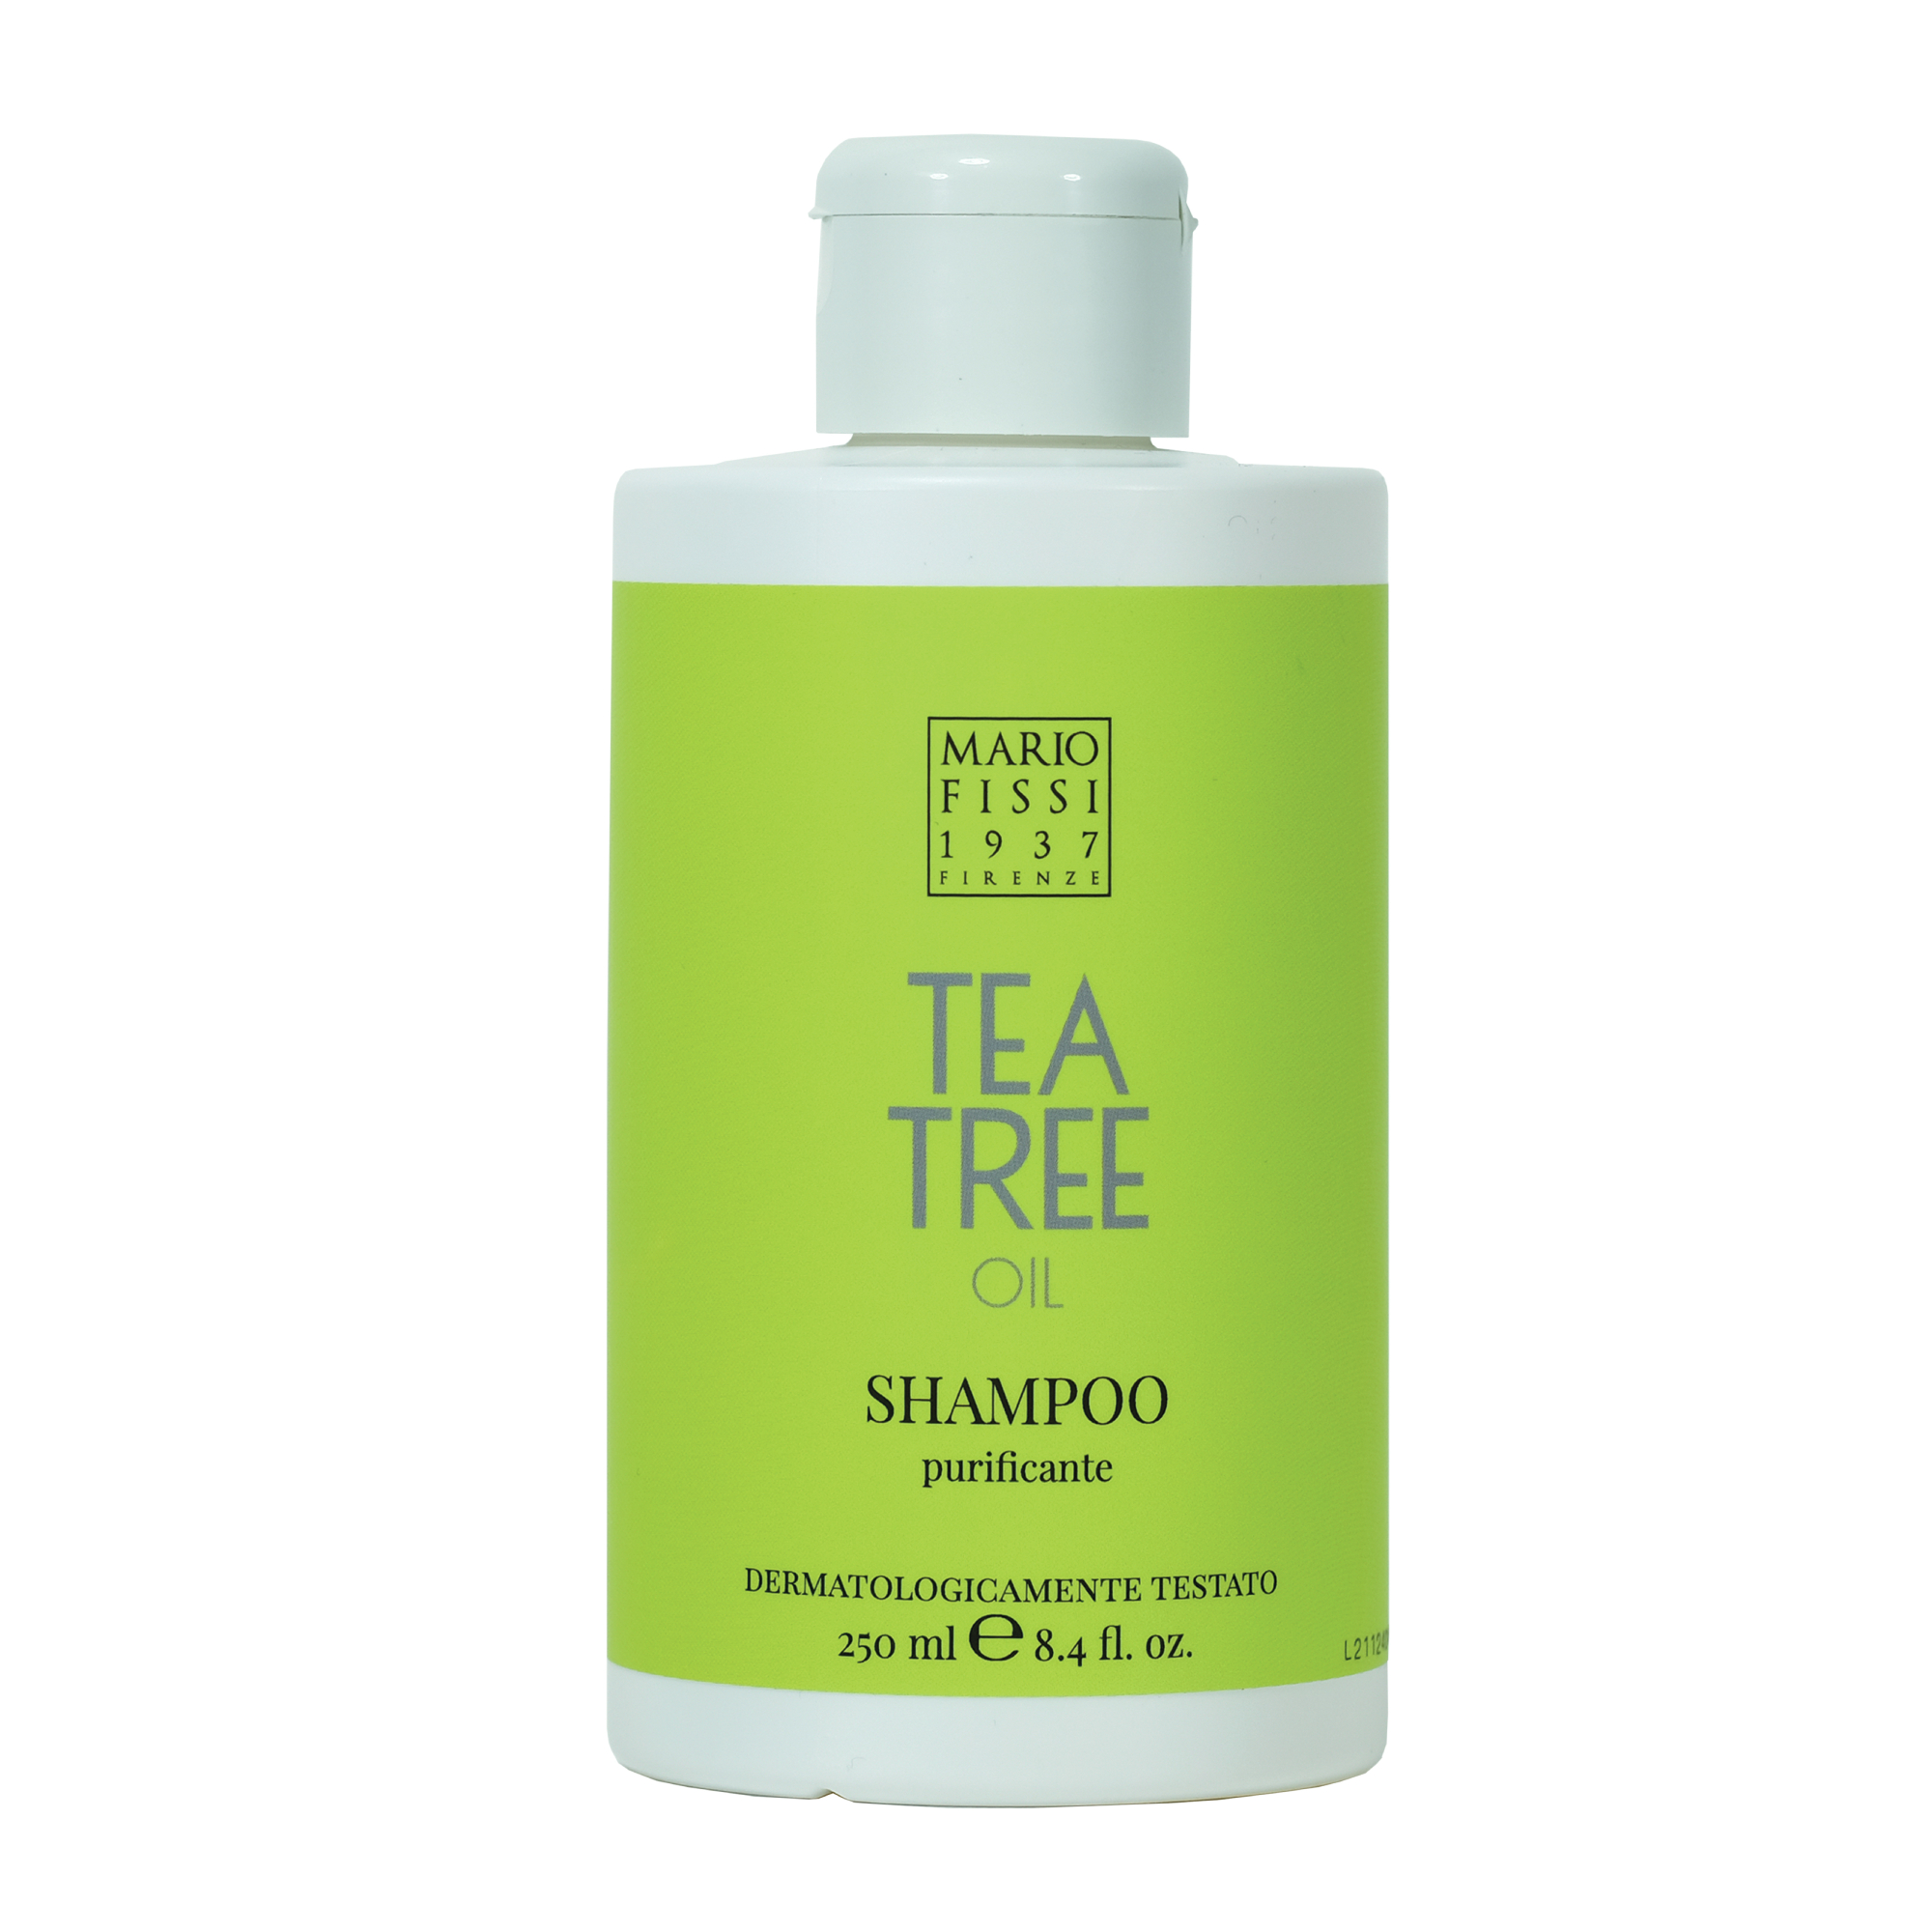 Шампунь для волос Mario Fissi 1937 Funzioniale Tea Tree Oil Очищающий С маслом Чайного Дерева 250 мл